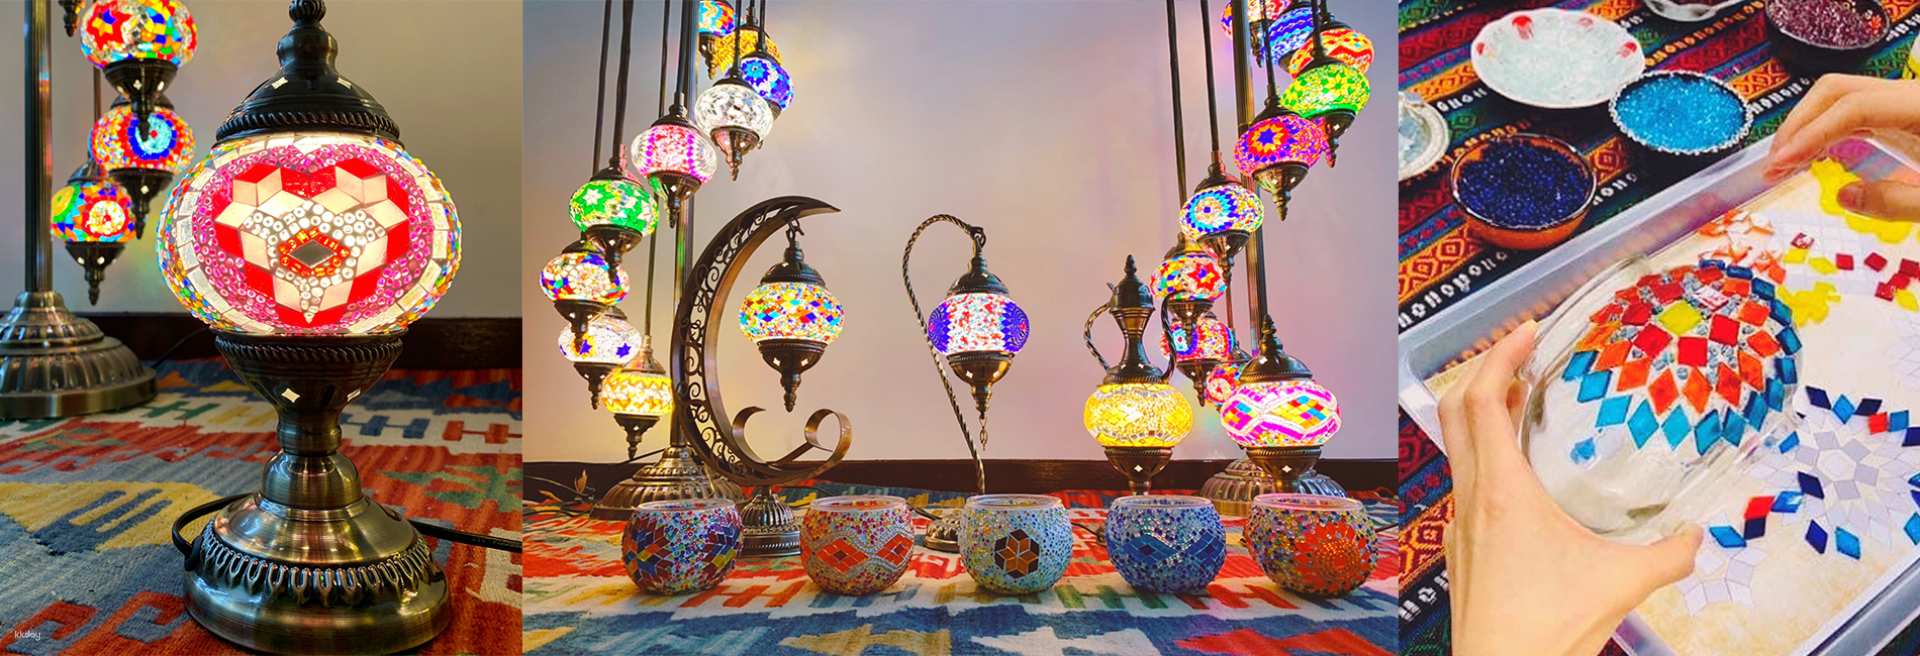 台北-土耳其馬賽克燈Mosaic Art House| DIY 手作體驗